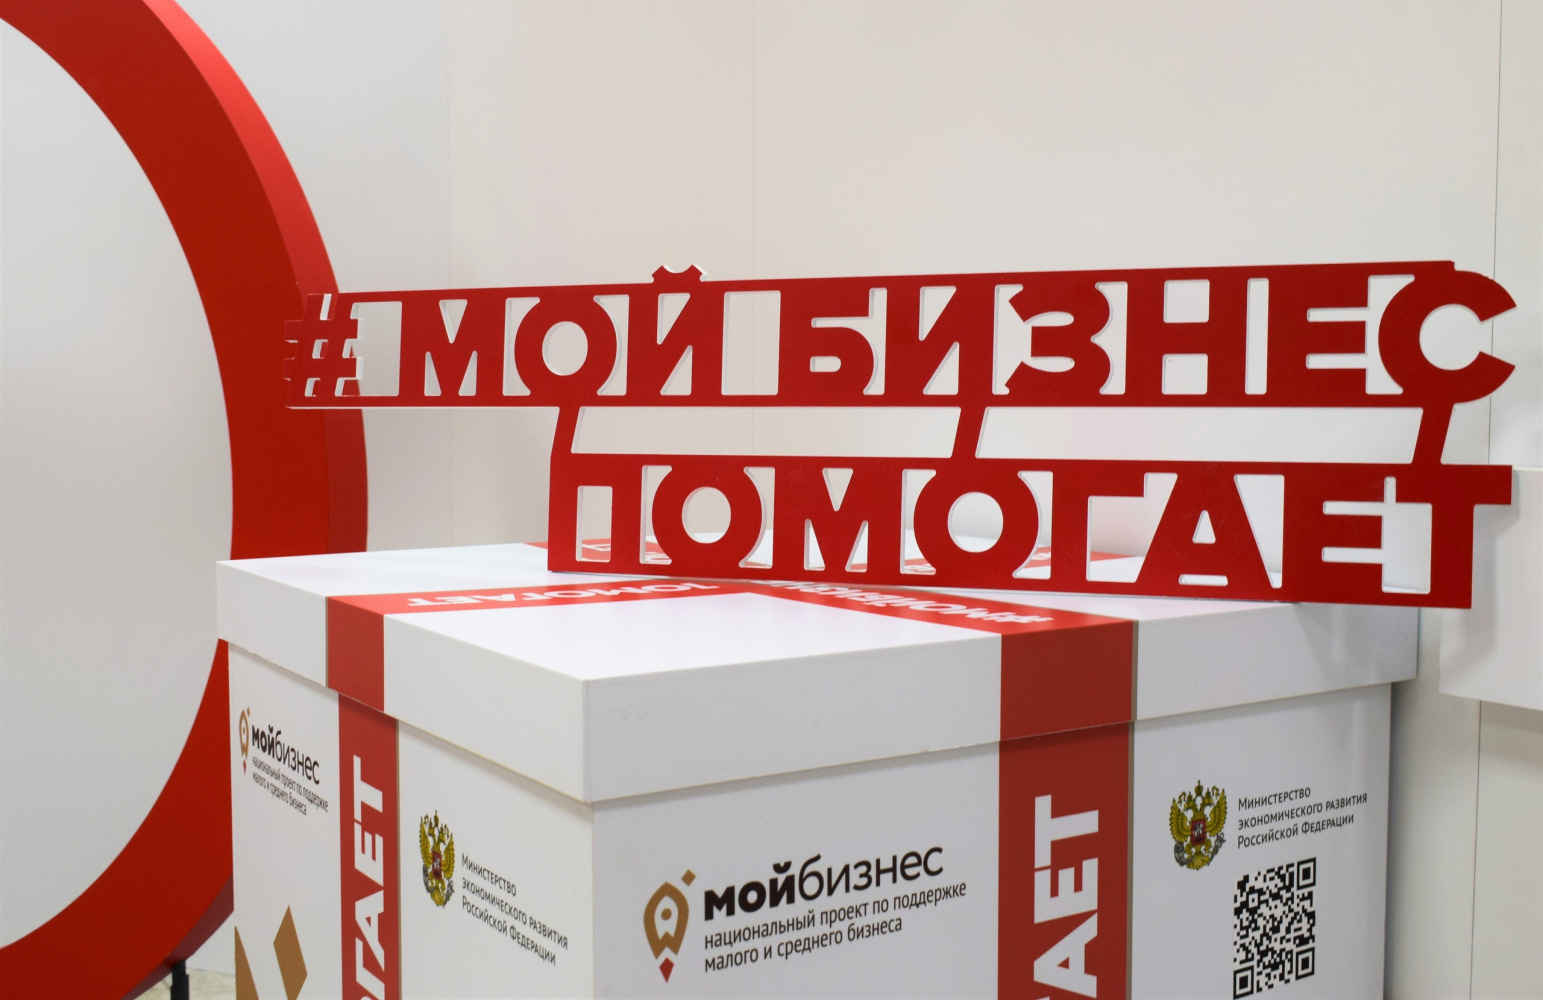 В 2023 году акция #МойбизнесПомогает охватила более  120 тысяч россиян.